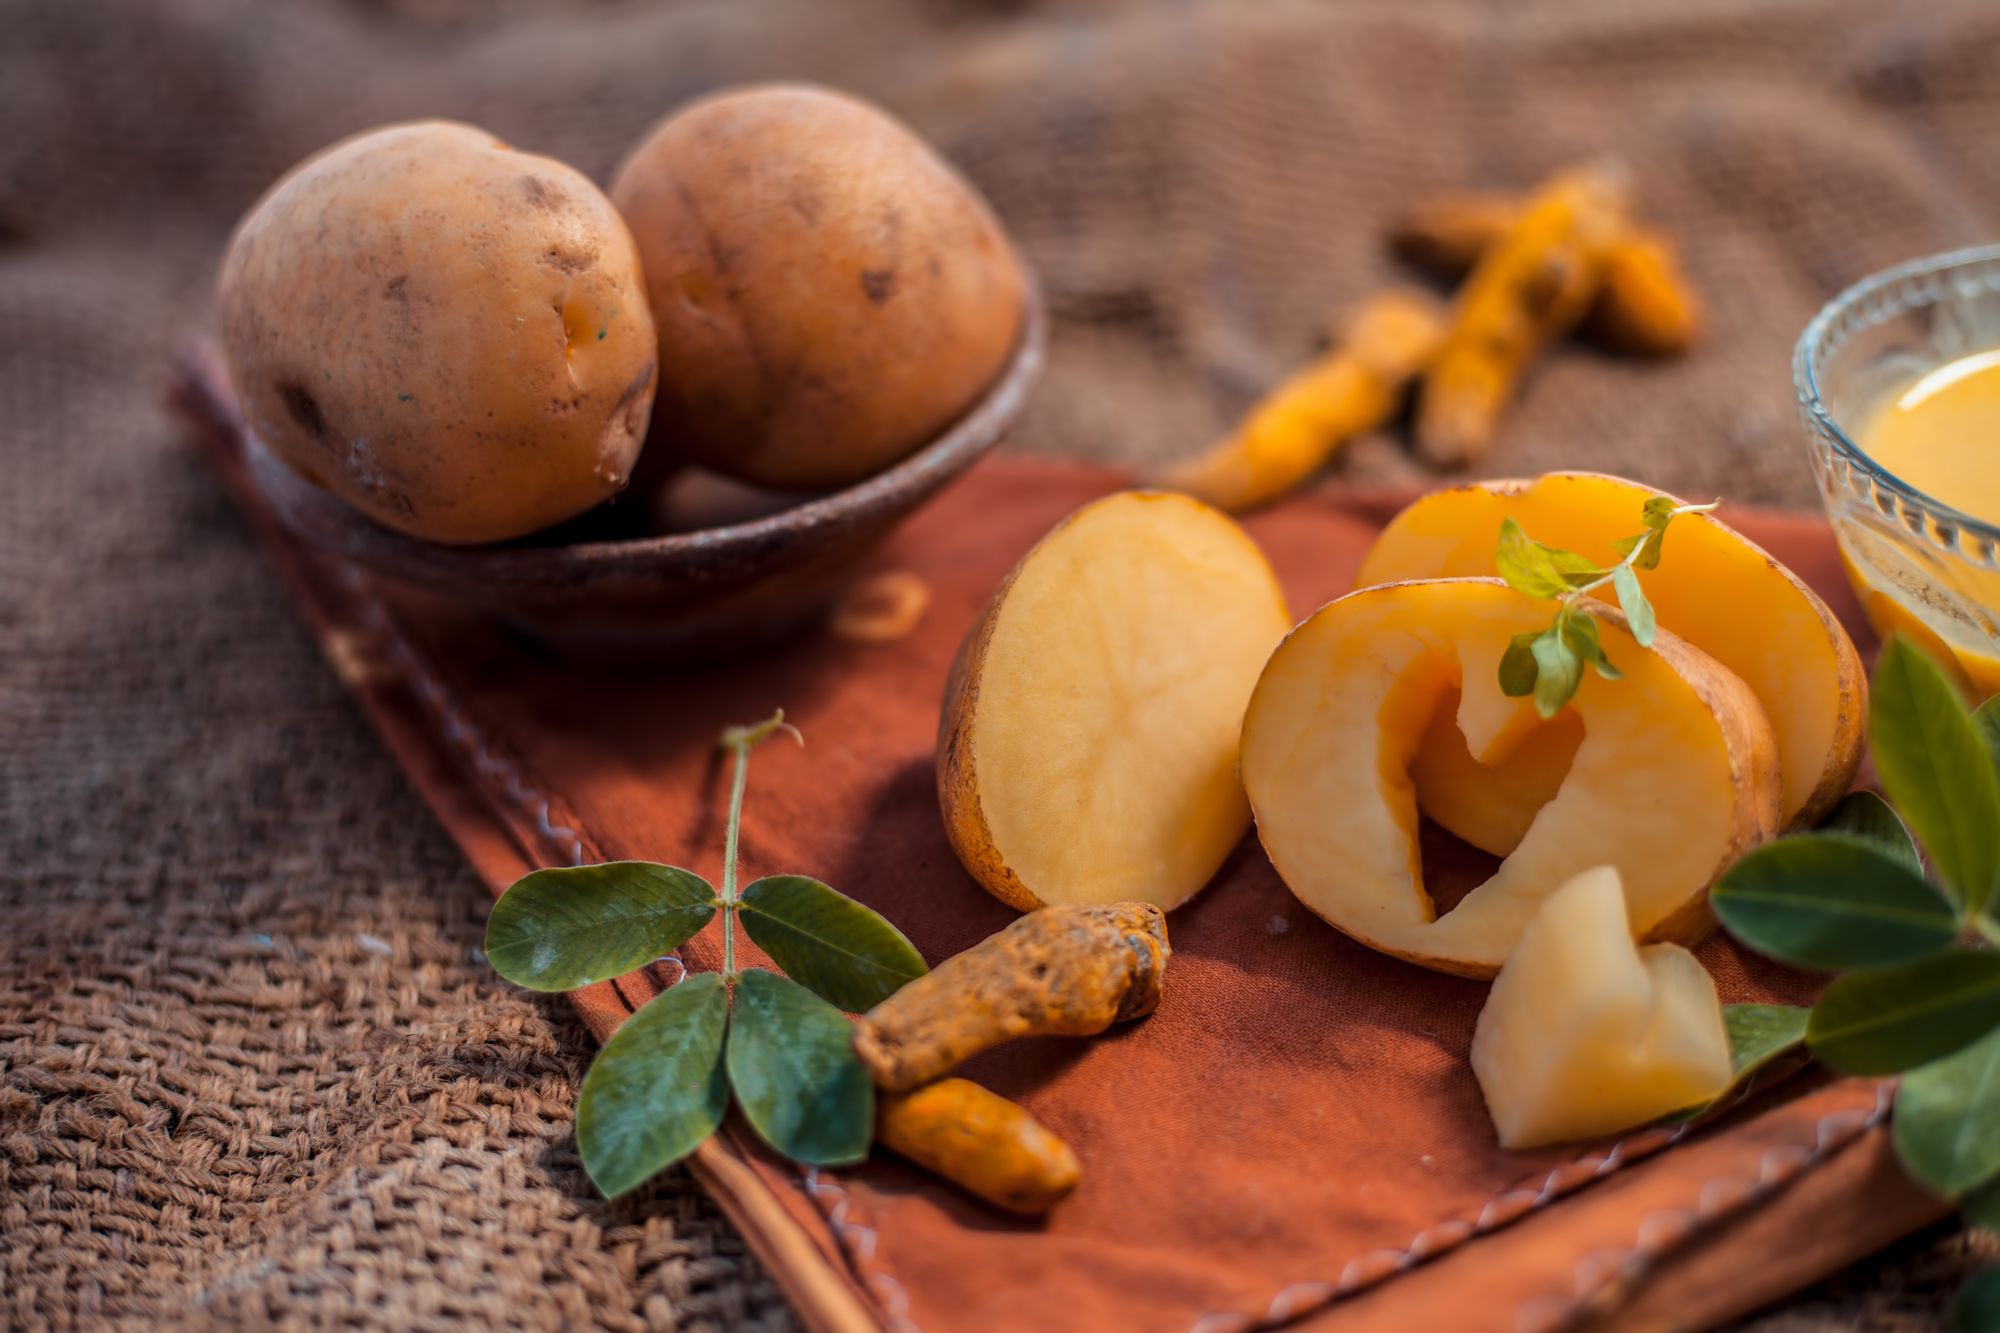 وصفة البطاطس لتفتيح المناطق الحساسة